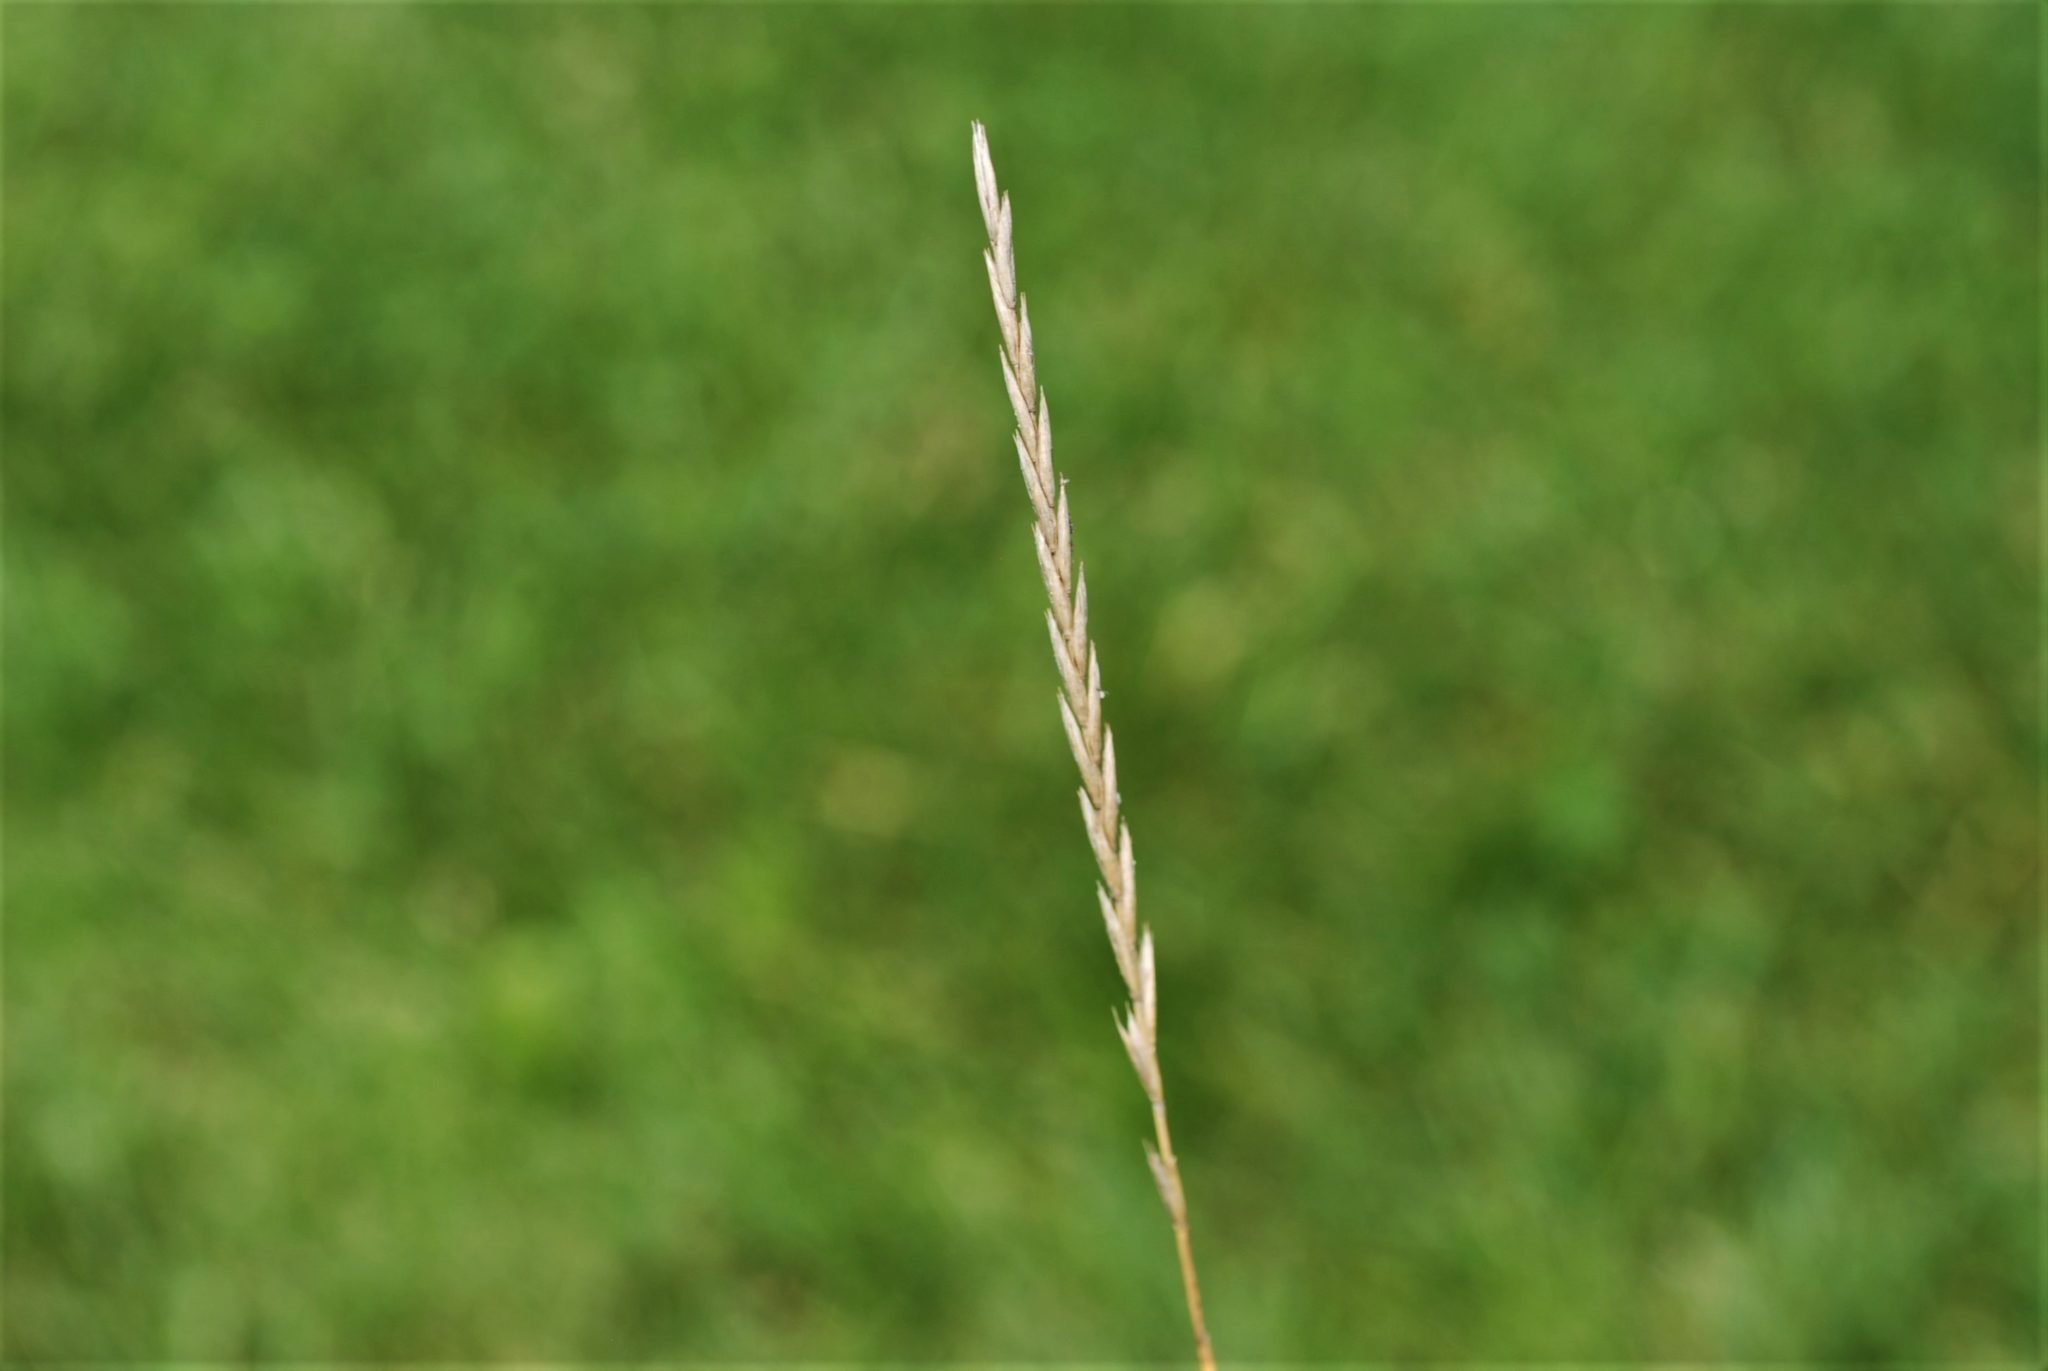 Quackgrass Seed Head